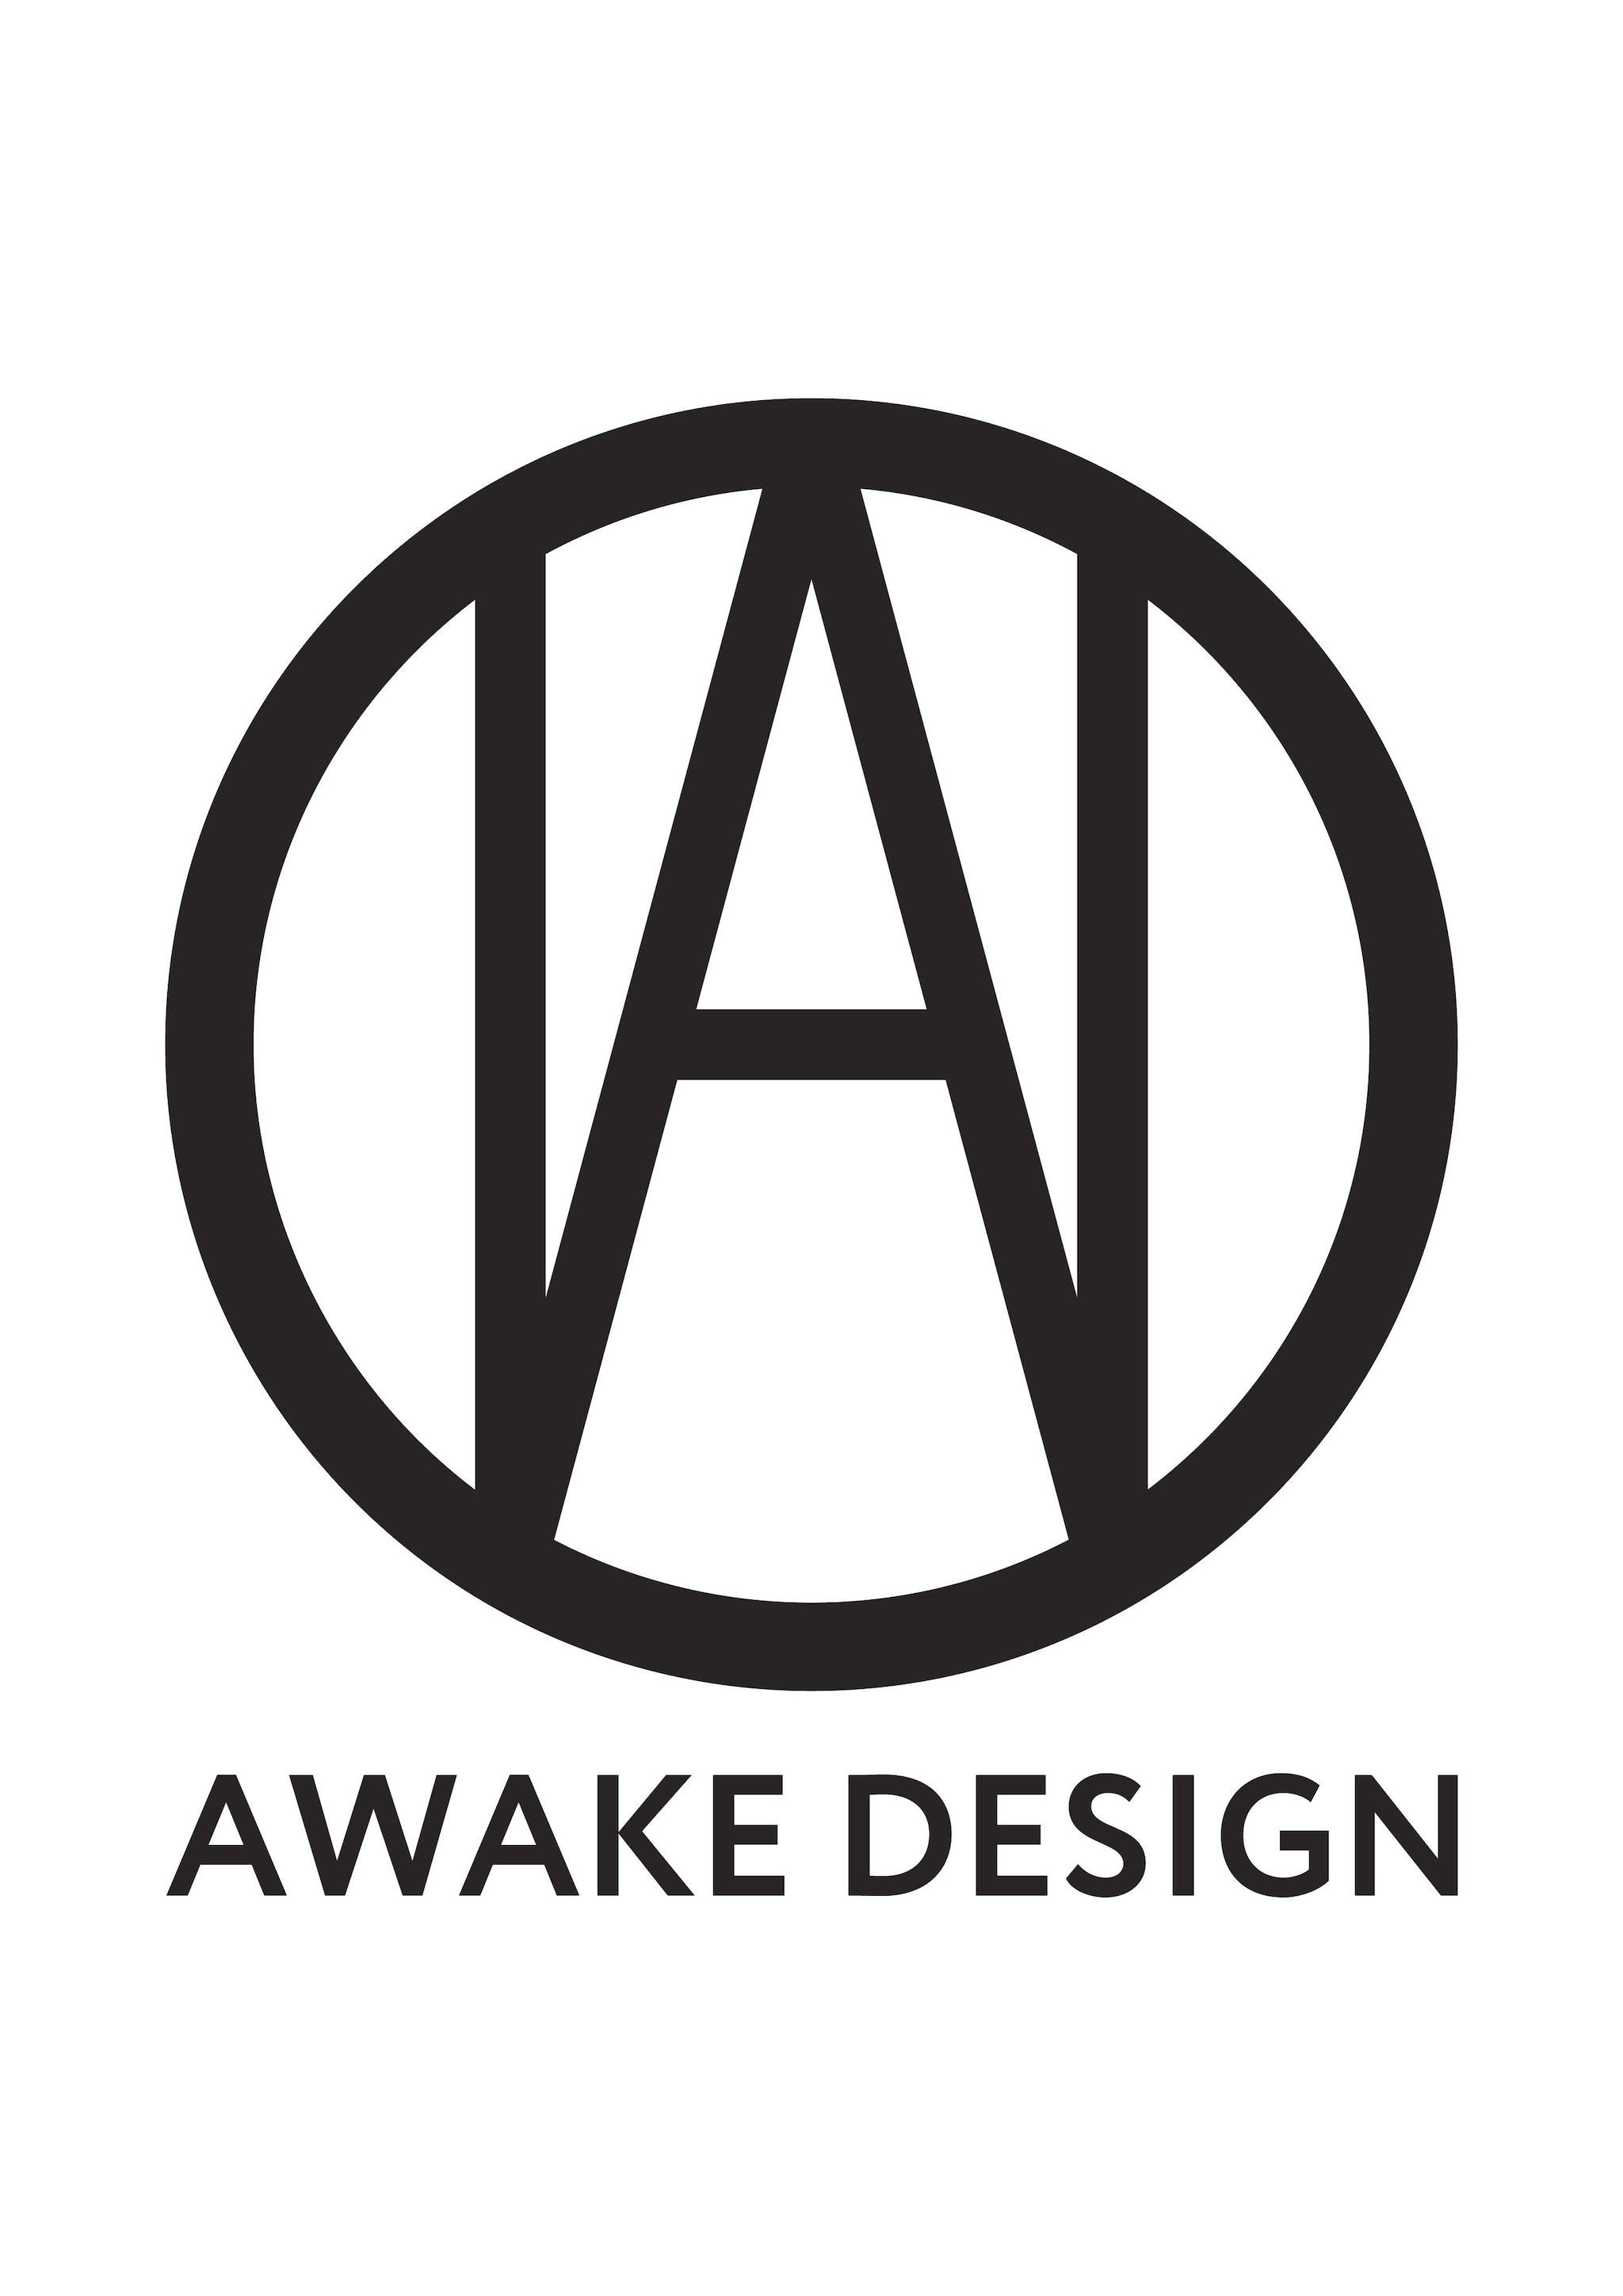 AWAKE DESIGN